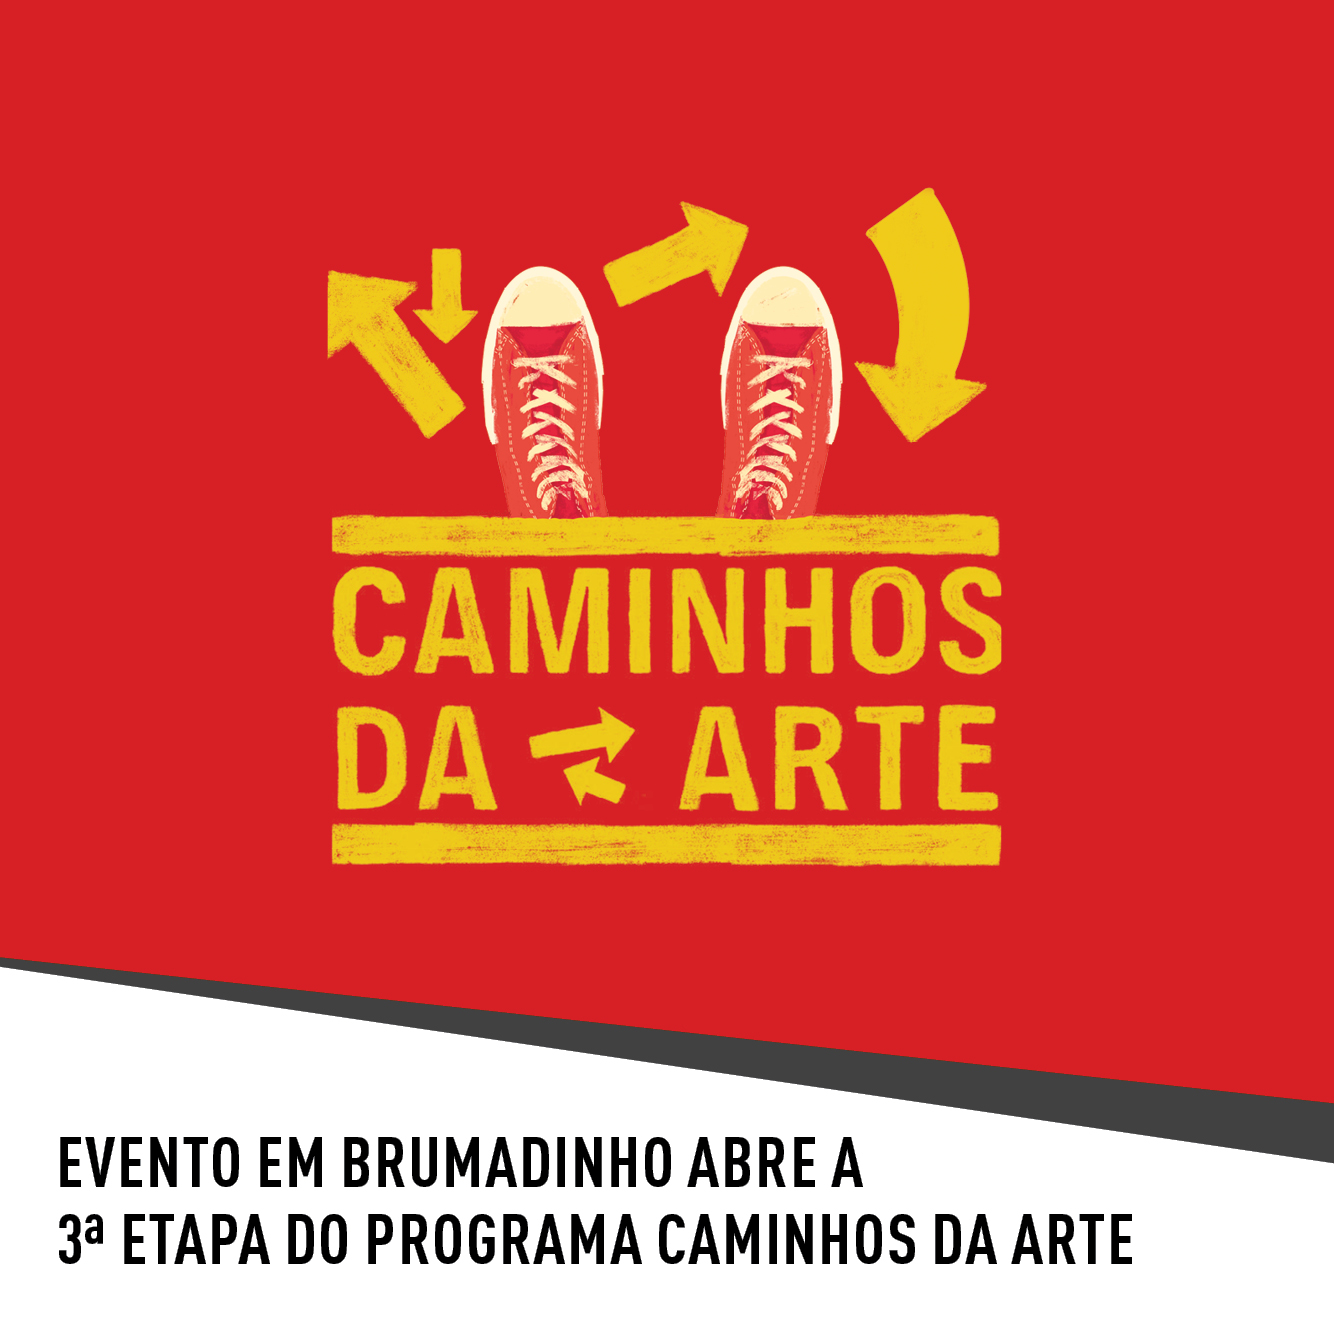 Evento: Evento em Brumadinho abre a terceira etapa do programa Caminhos da Arte